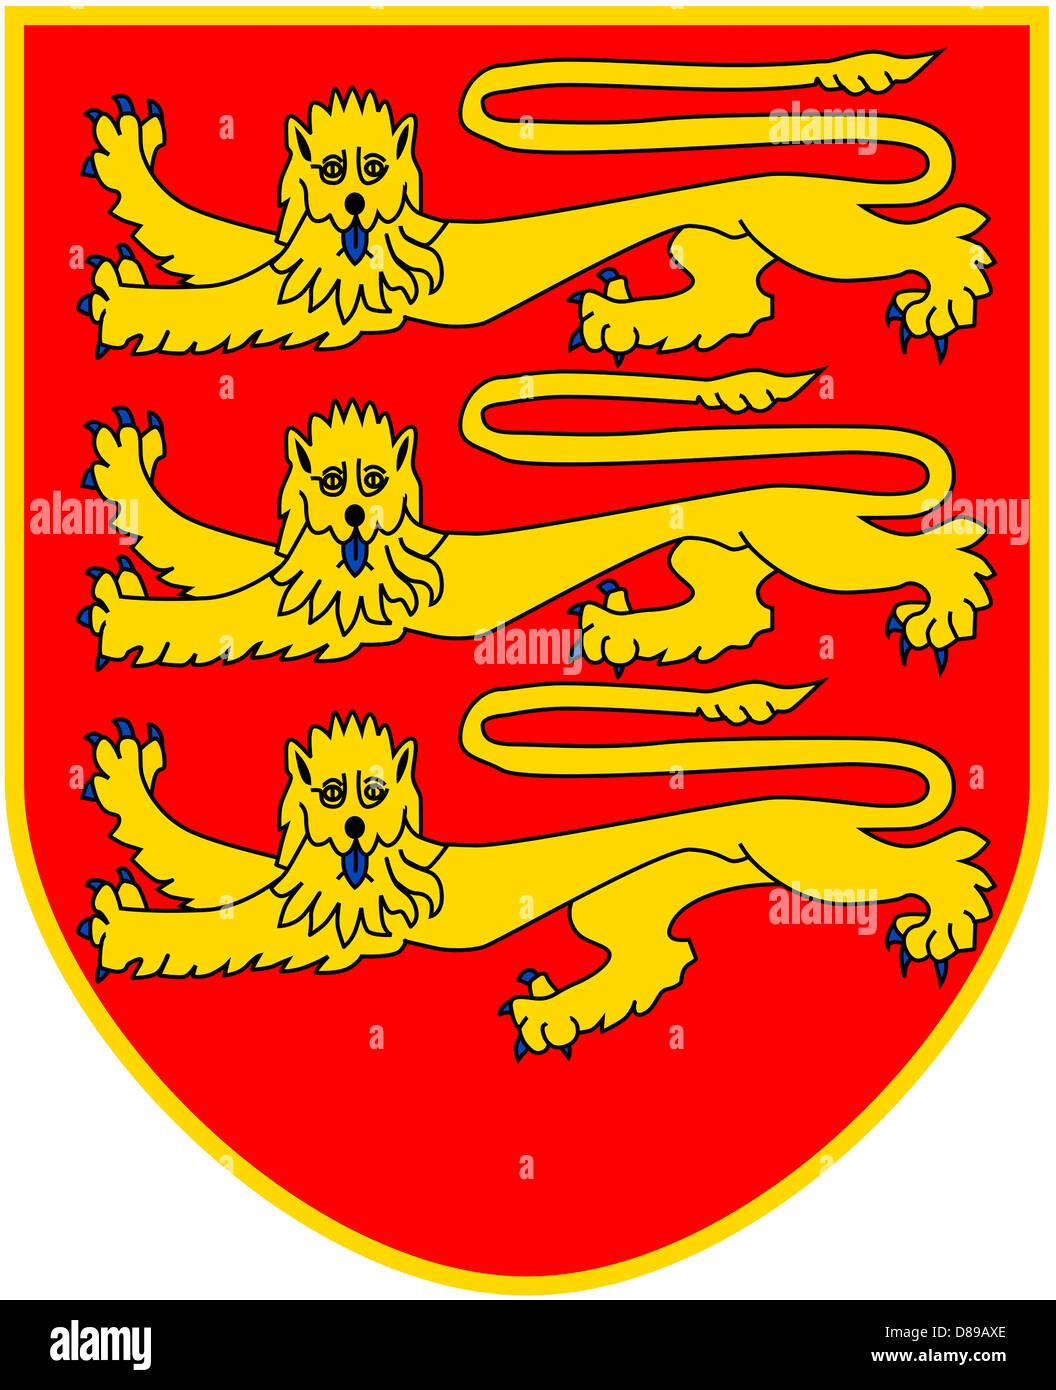 Escudo de armas de la dependencia de la Corona Británica Jersey. Foto de stock